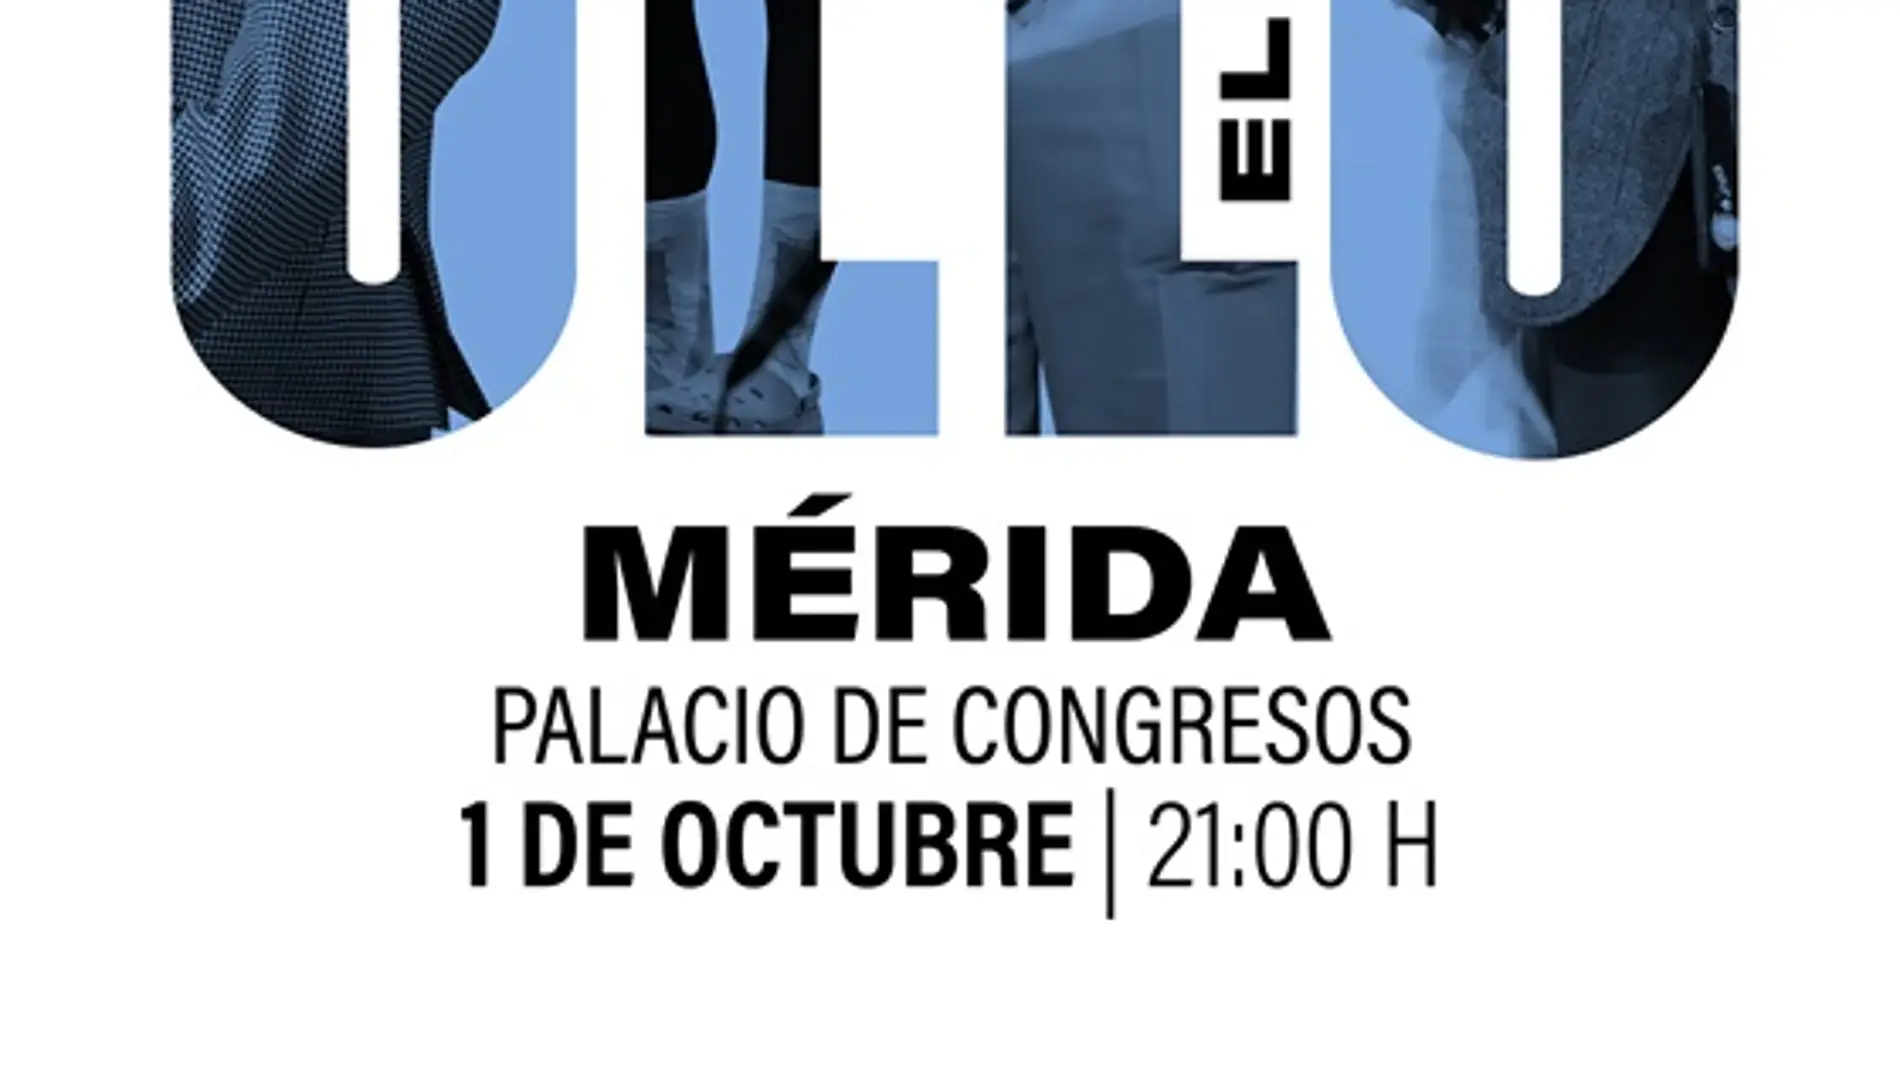 El musical 'El Selu' estará en el Palacio de Congresos de Mérida el 1 de octubre 